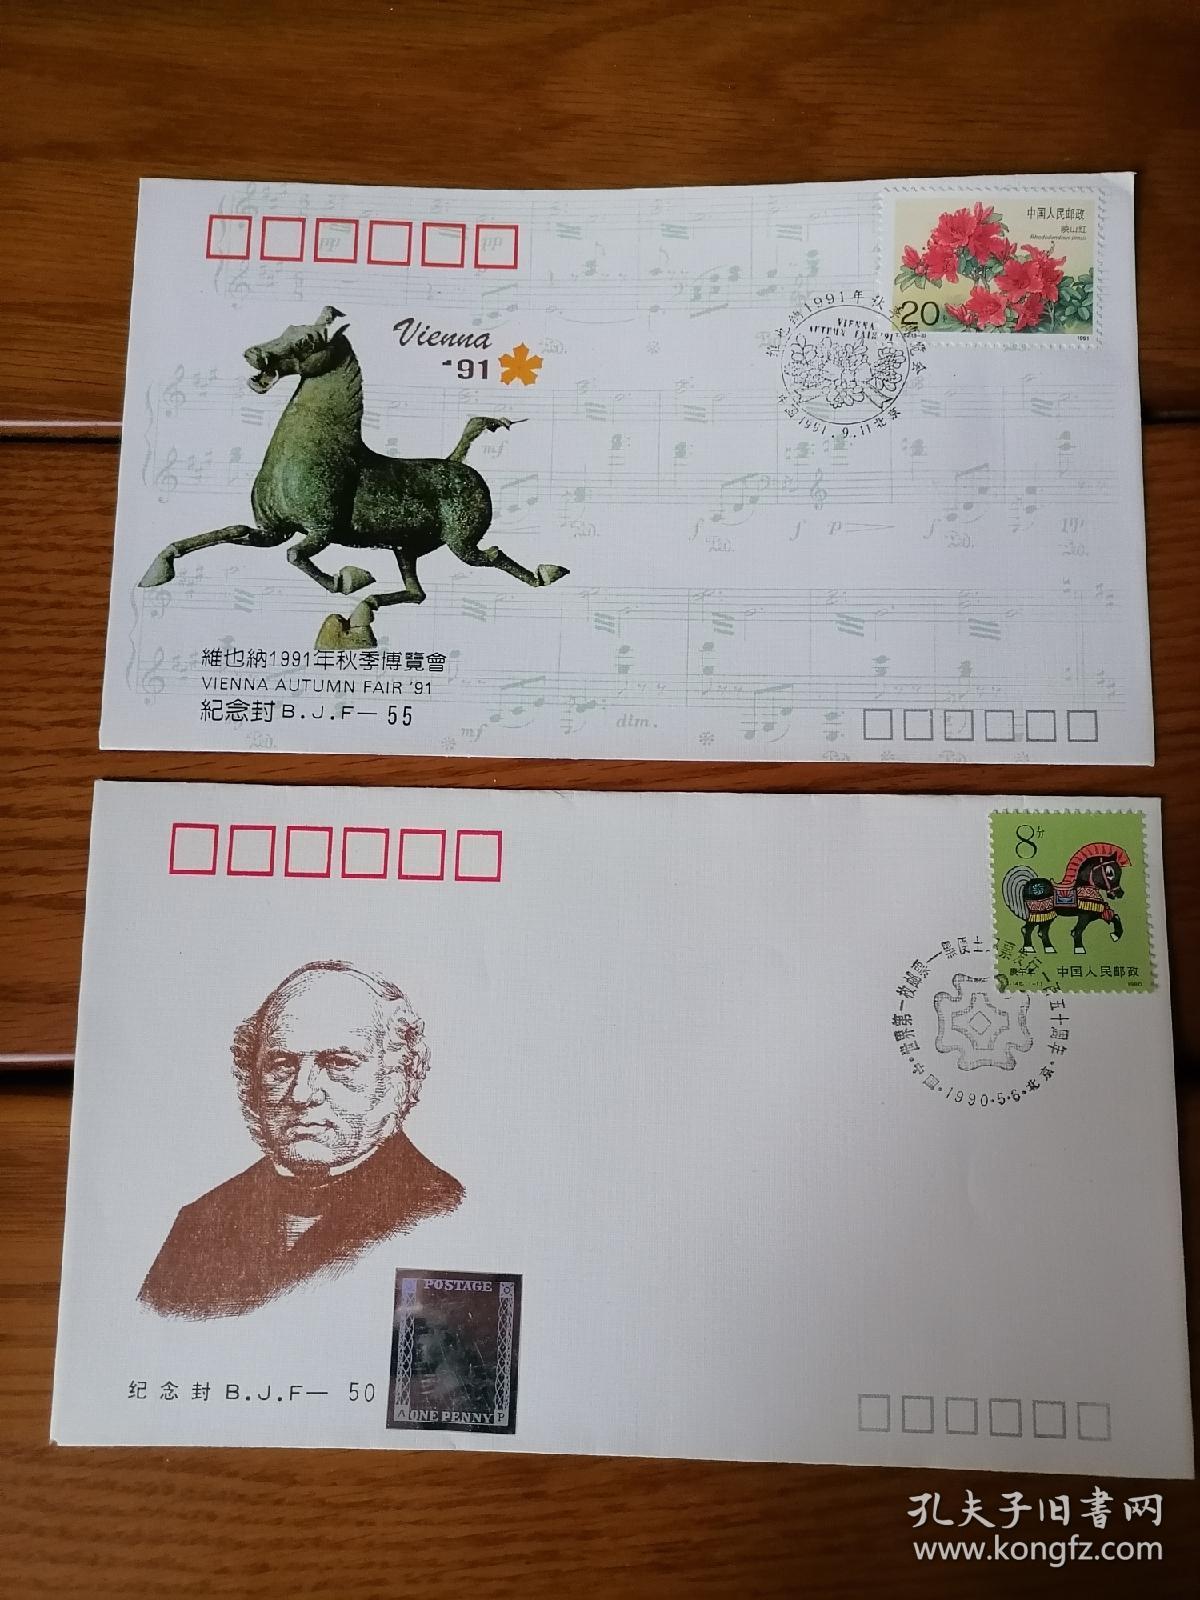 北京市邮票公司在上世纪九十年代发行的纪念封五枚，八十年代后期纪念封一枚（编号：bjf46、50、55、56、63、73各一枚），安徽省邮票公司上世纪八十年代后期发行的节日系列纪念封散封二枚（全套封共七枚）。